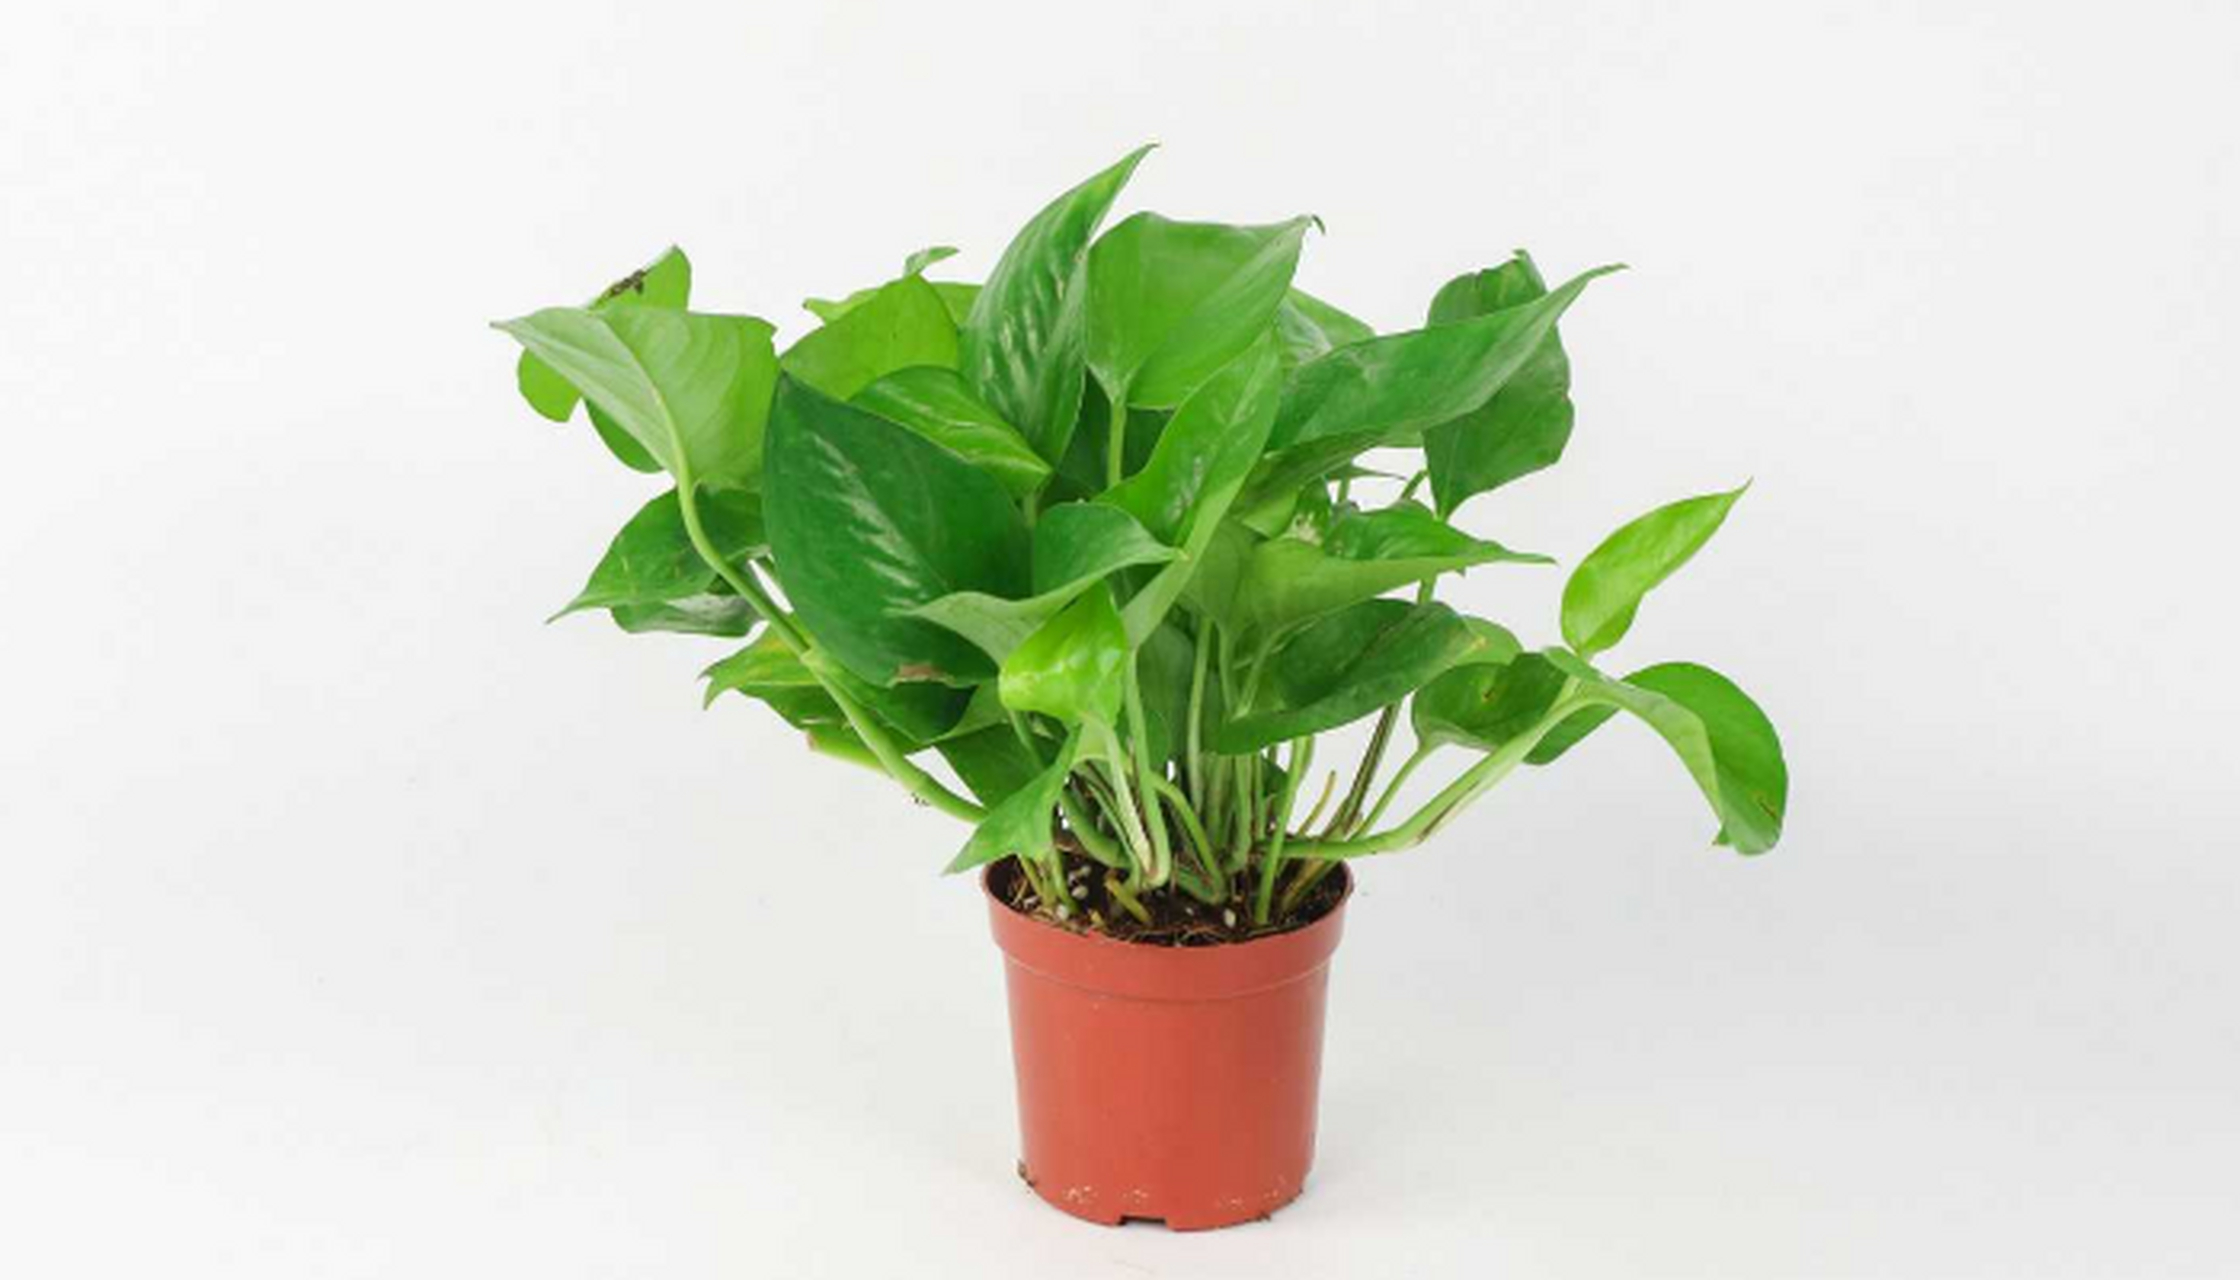 绿萝: 属于麒麟叶属植物,大型常绿藤本,生长于热带地区,常攀援生长在